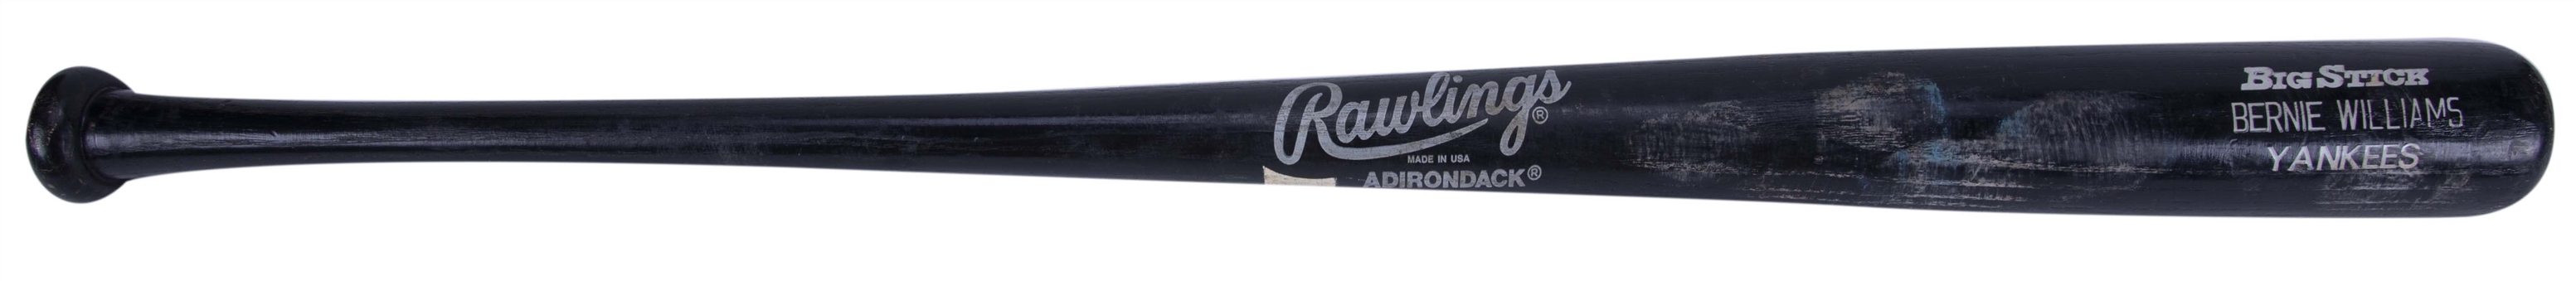 1995 Bernie Williams Yankees Game Used Rawlings 433B Professional Model Bat (PSA/DNA GU 9)